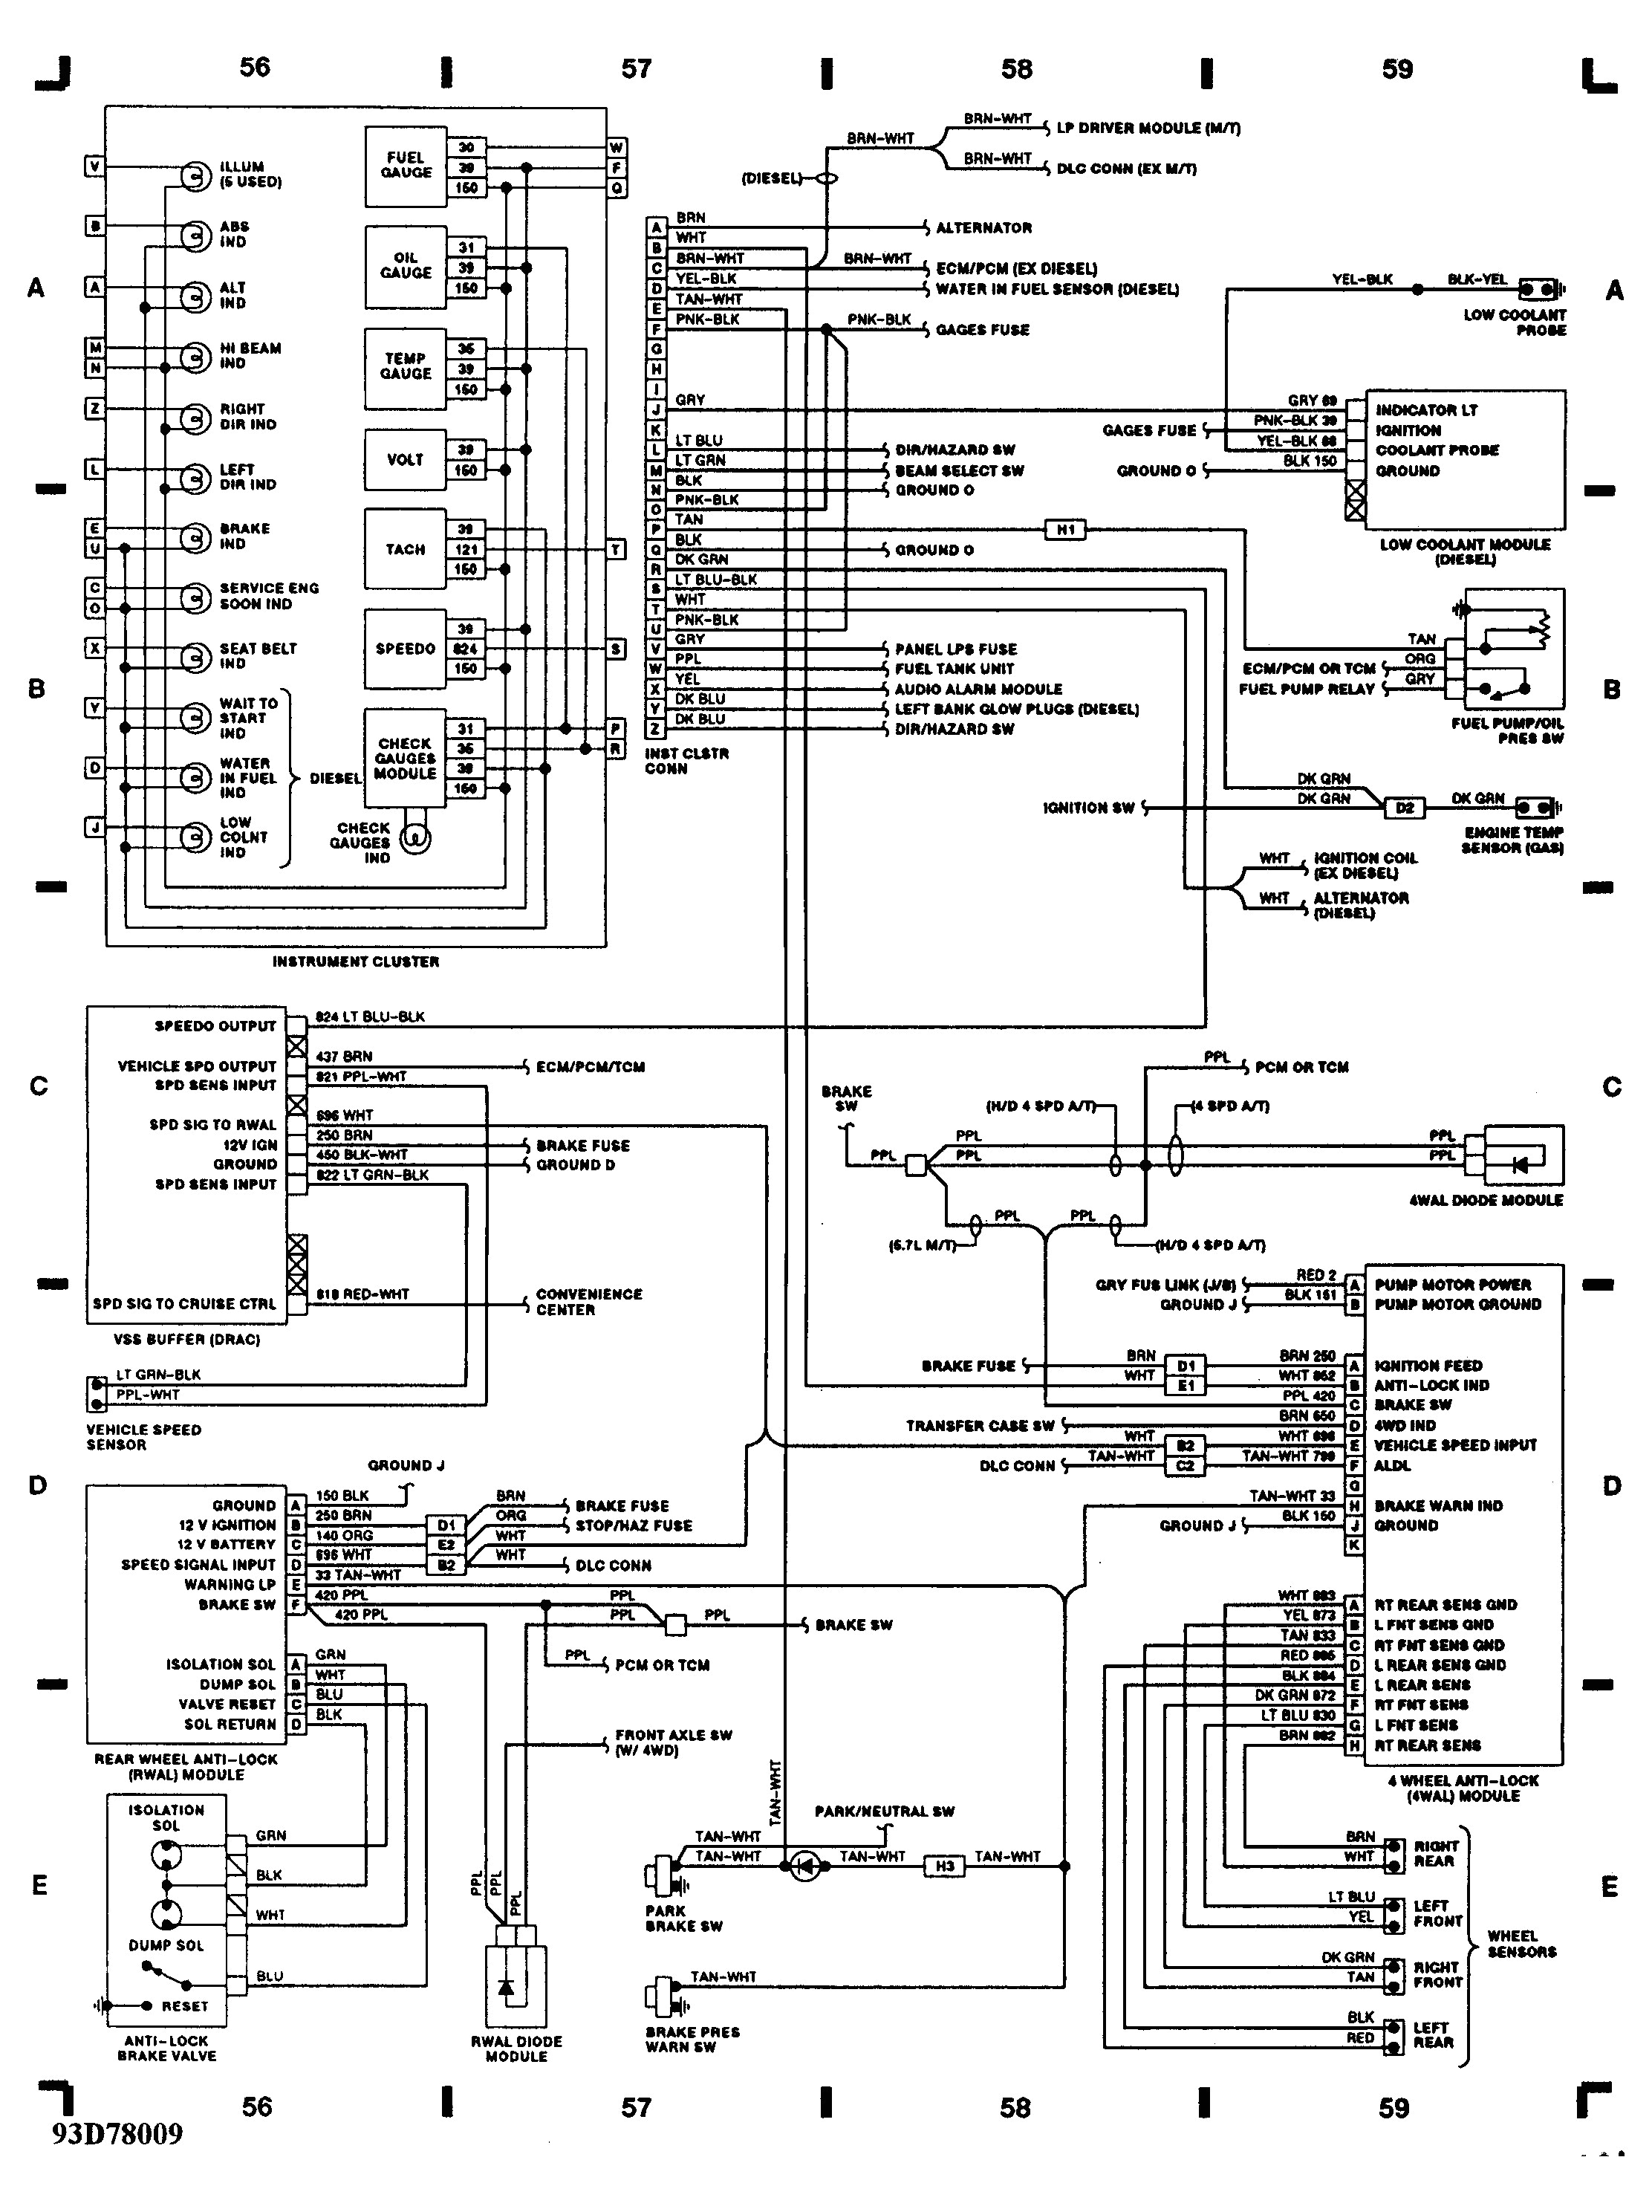 painless wiring diagram trans wiring diagram blog painless wiring diagram trans